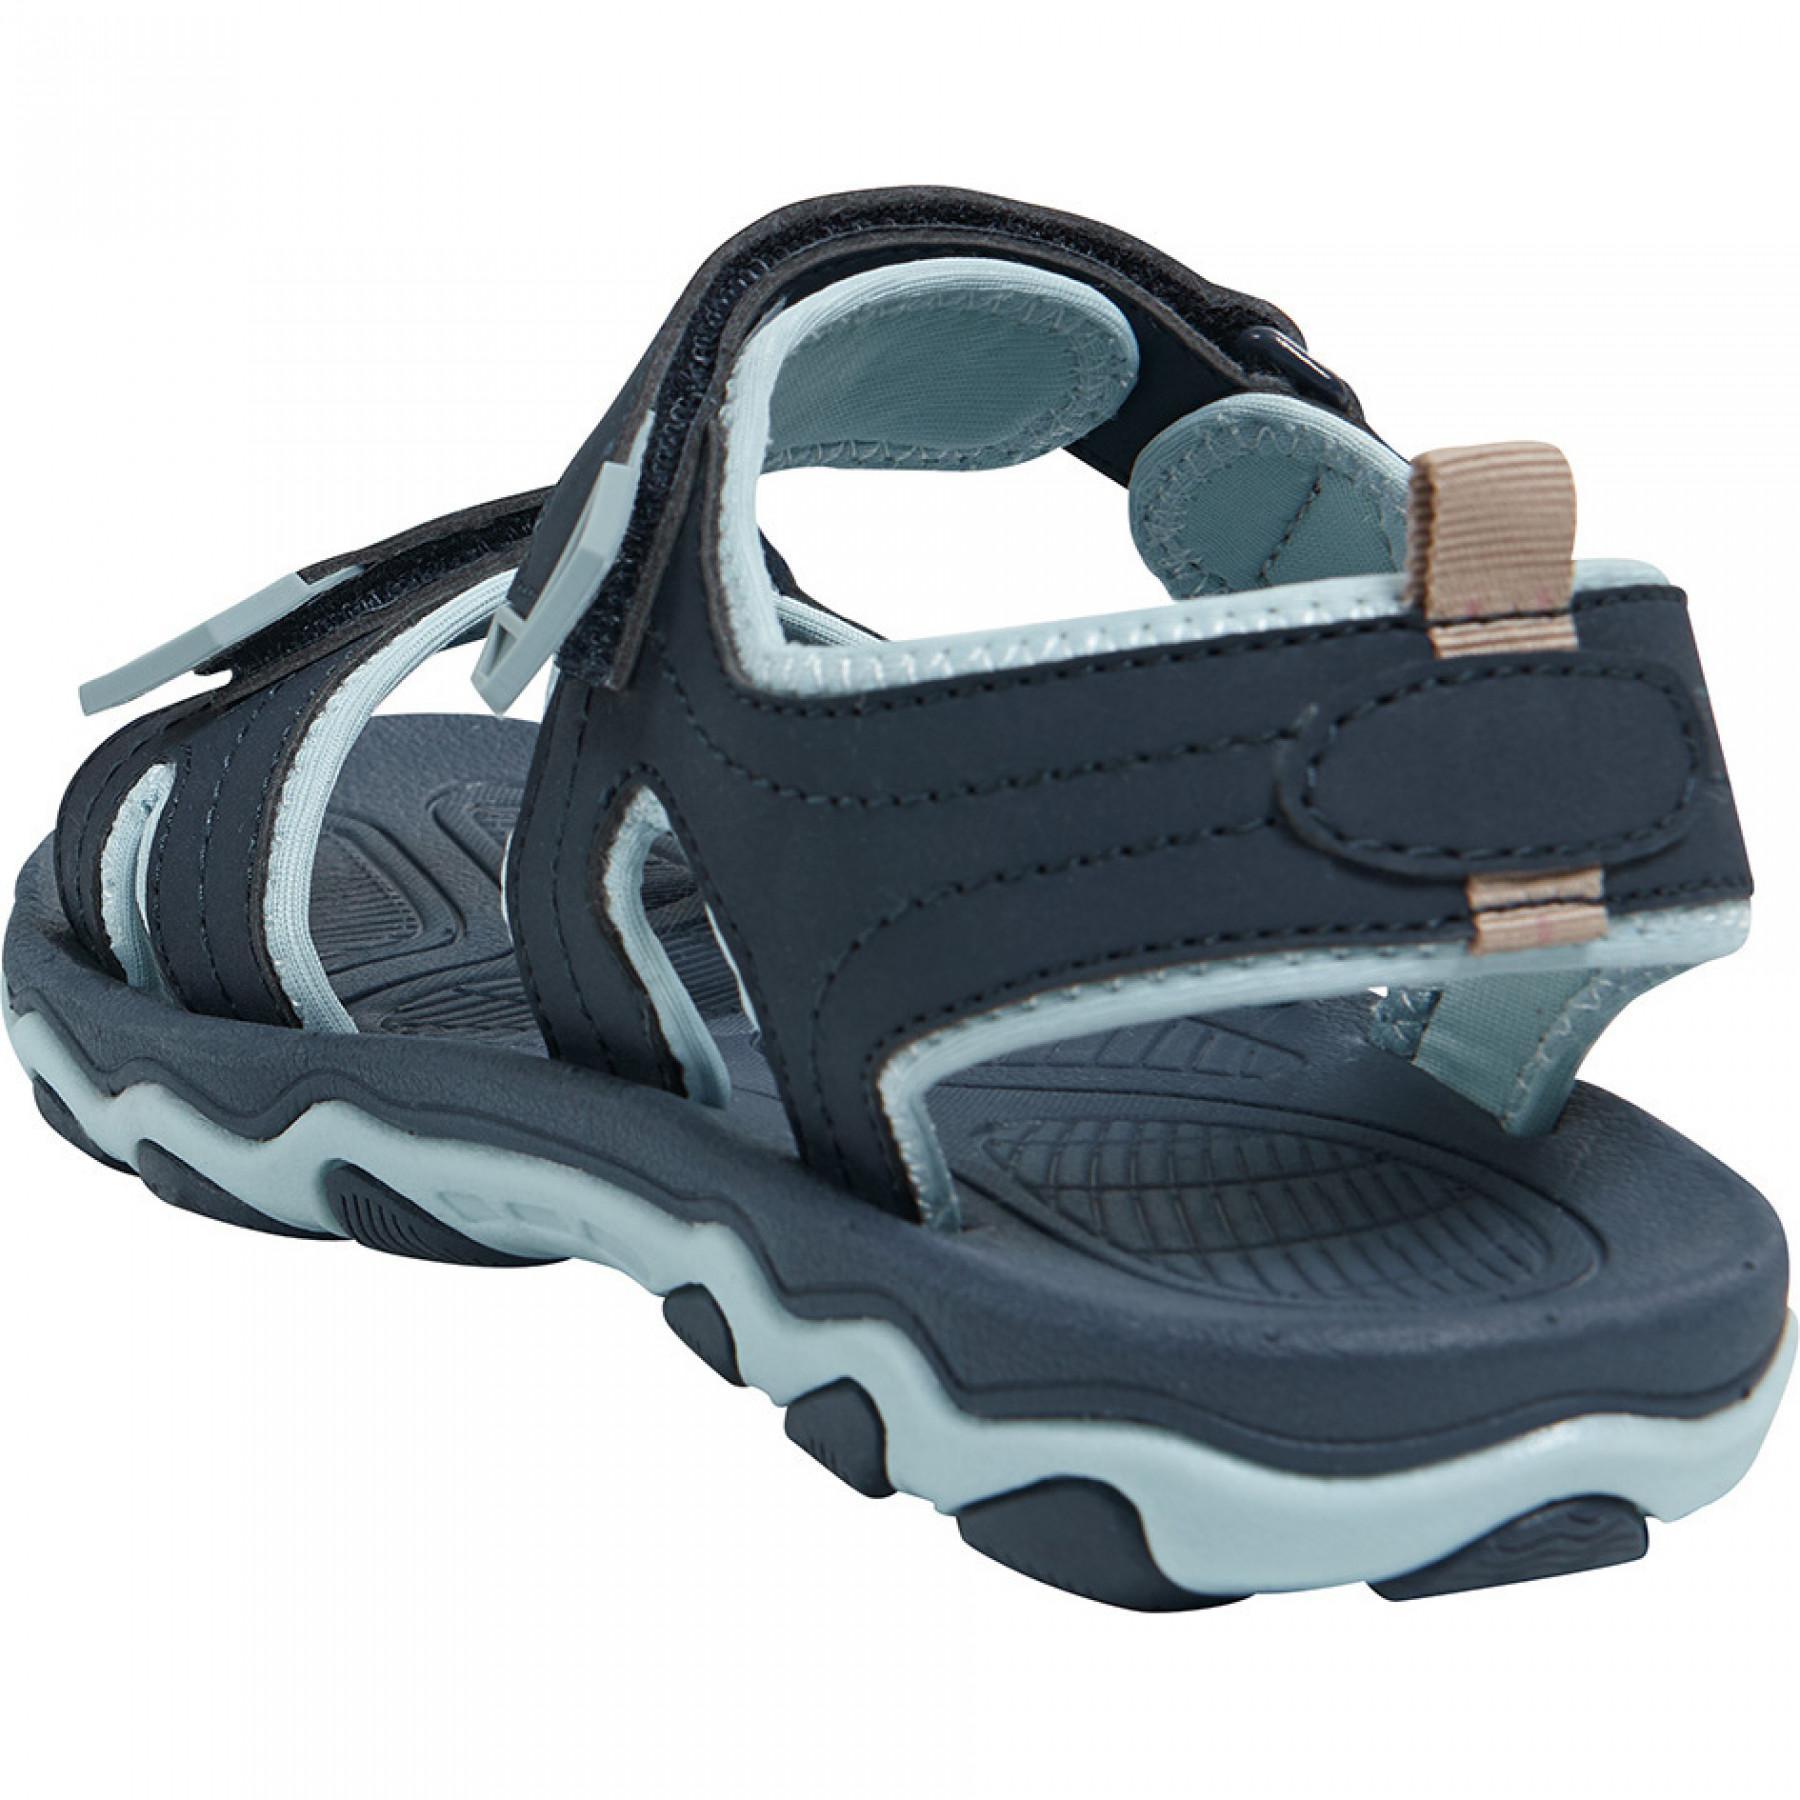 Children's flip-flops Hummel sandal sport